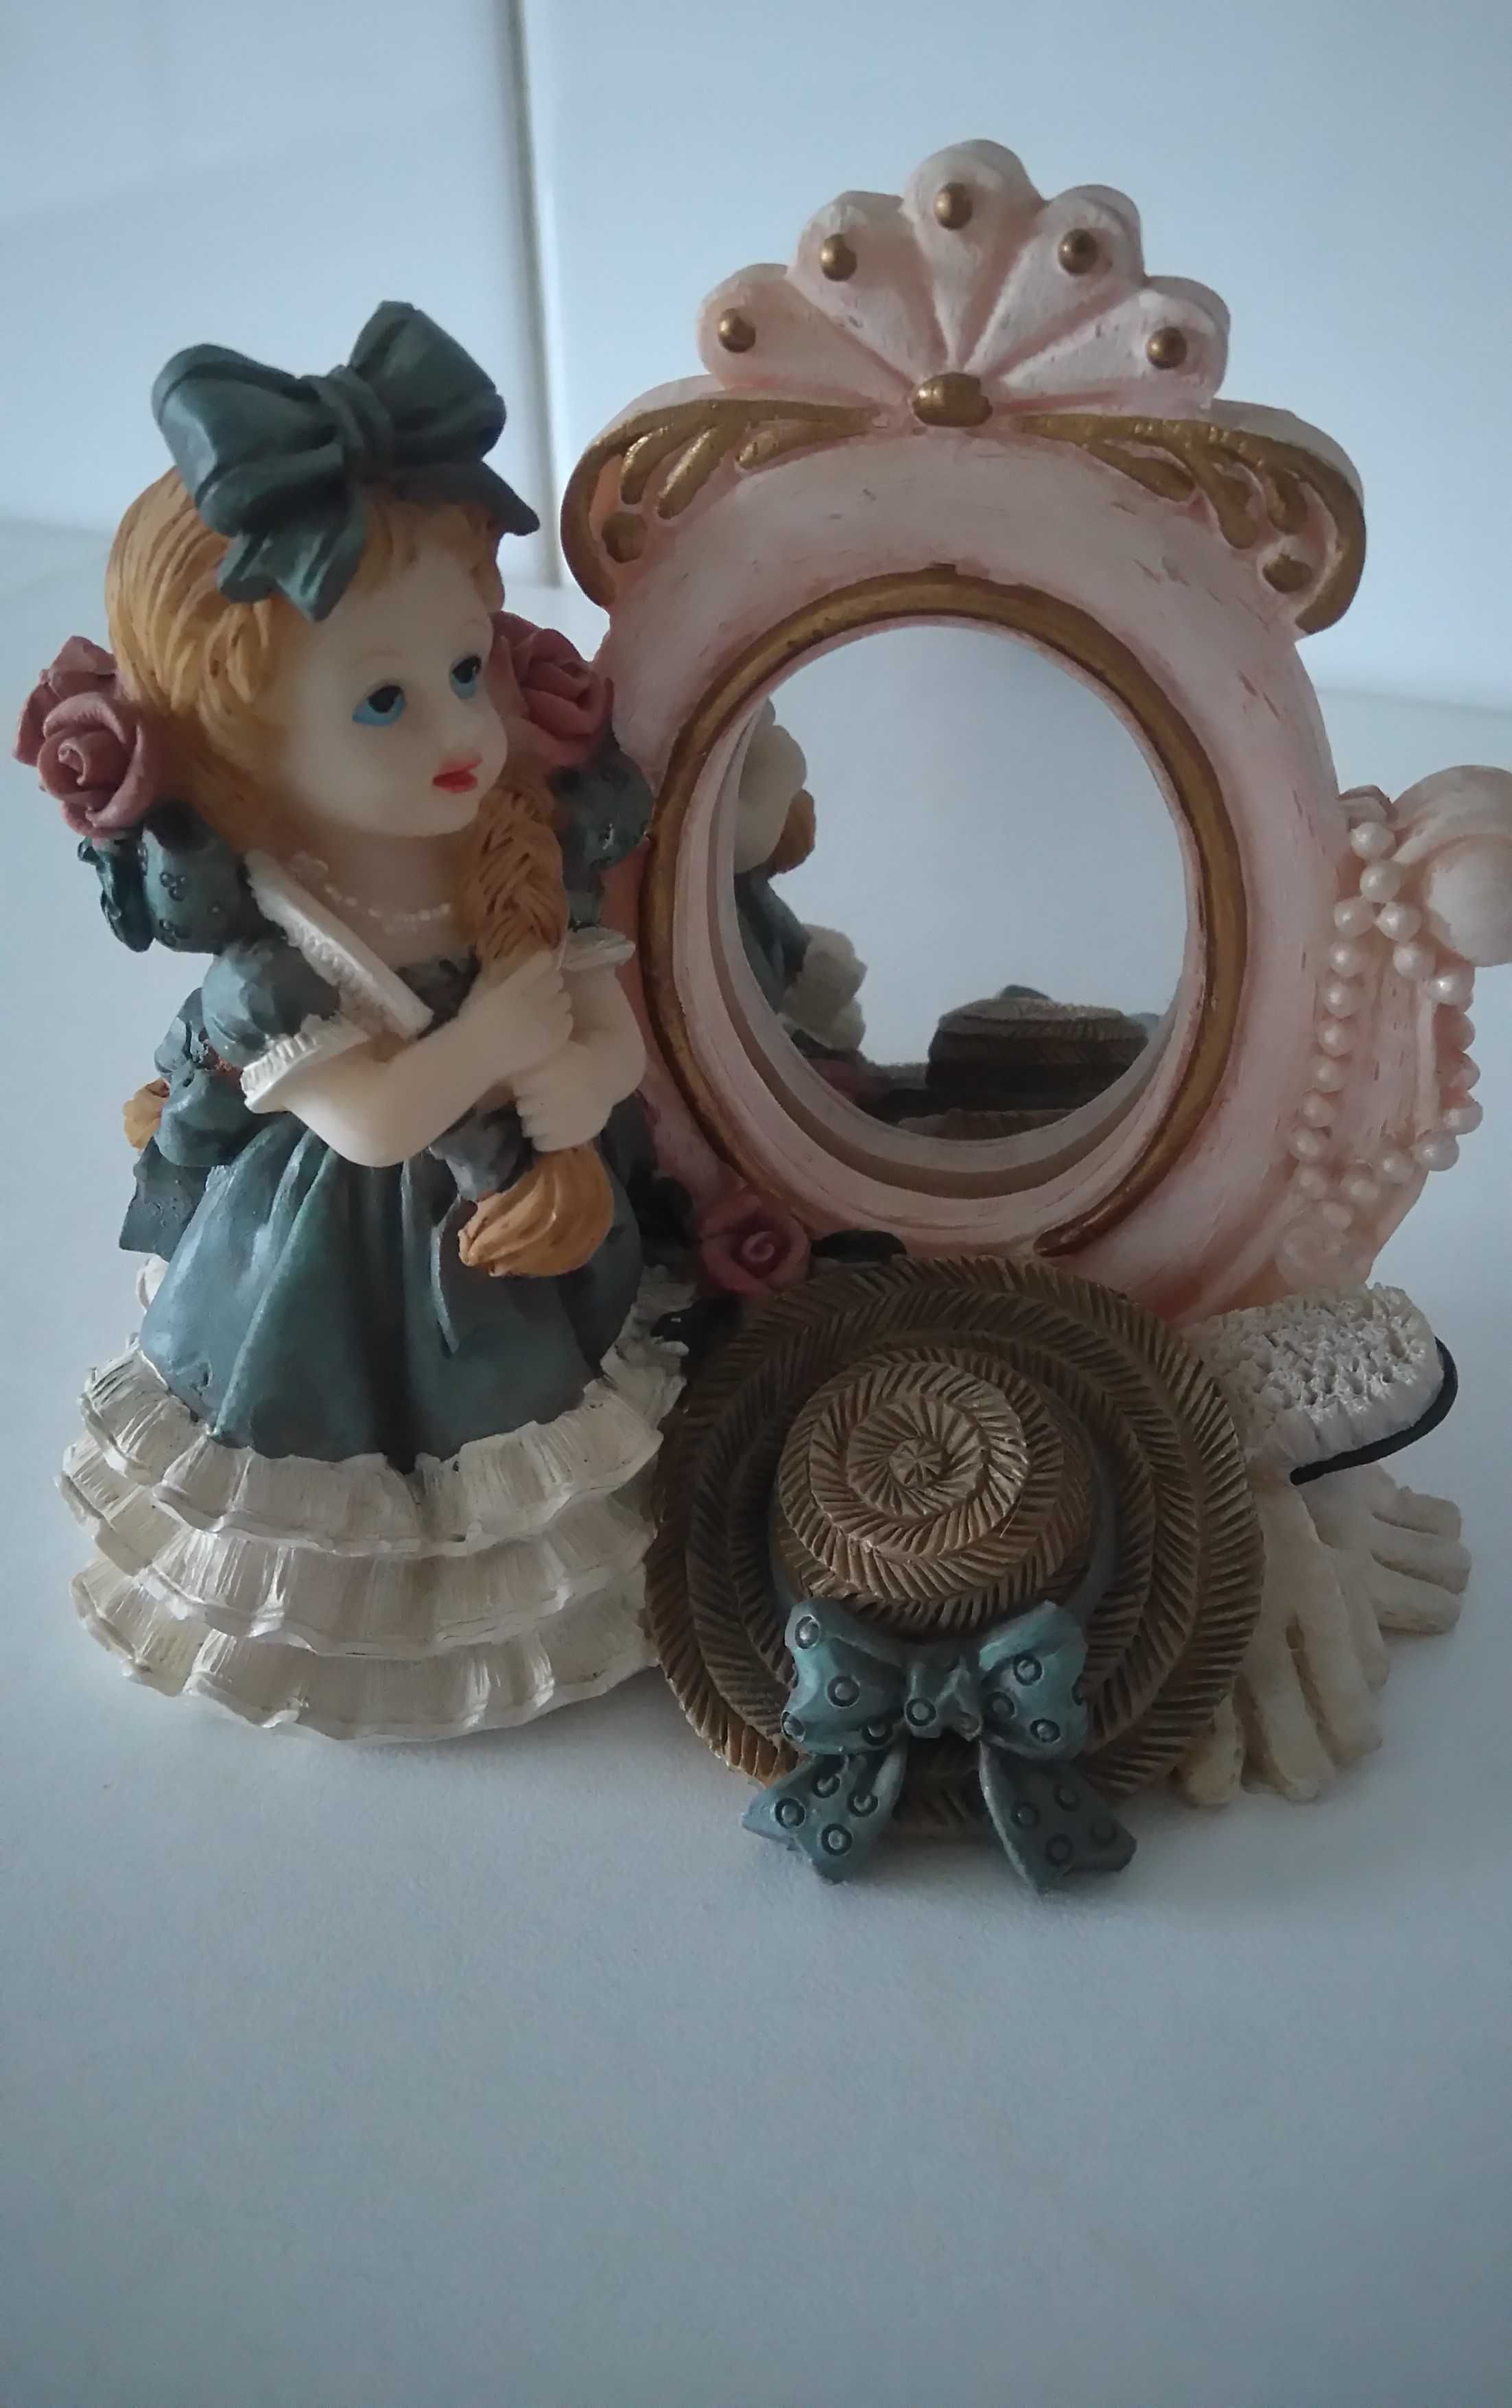 2 Bonecas de porcelana com espelho